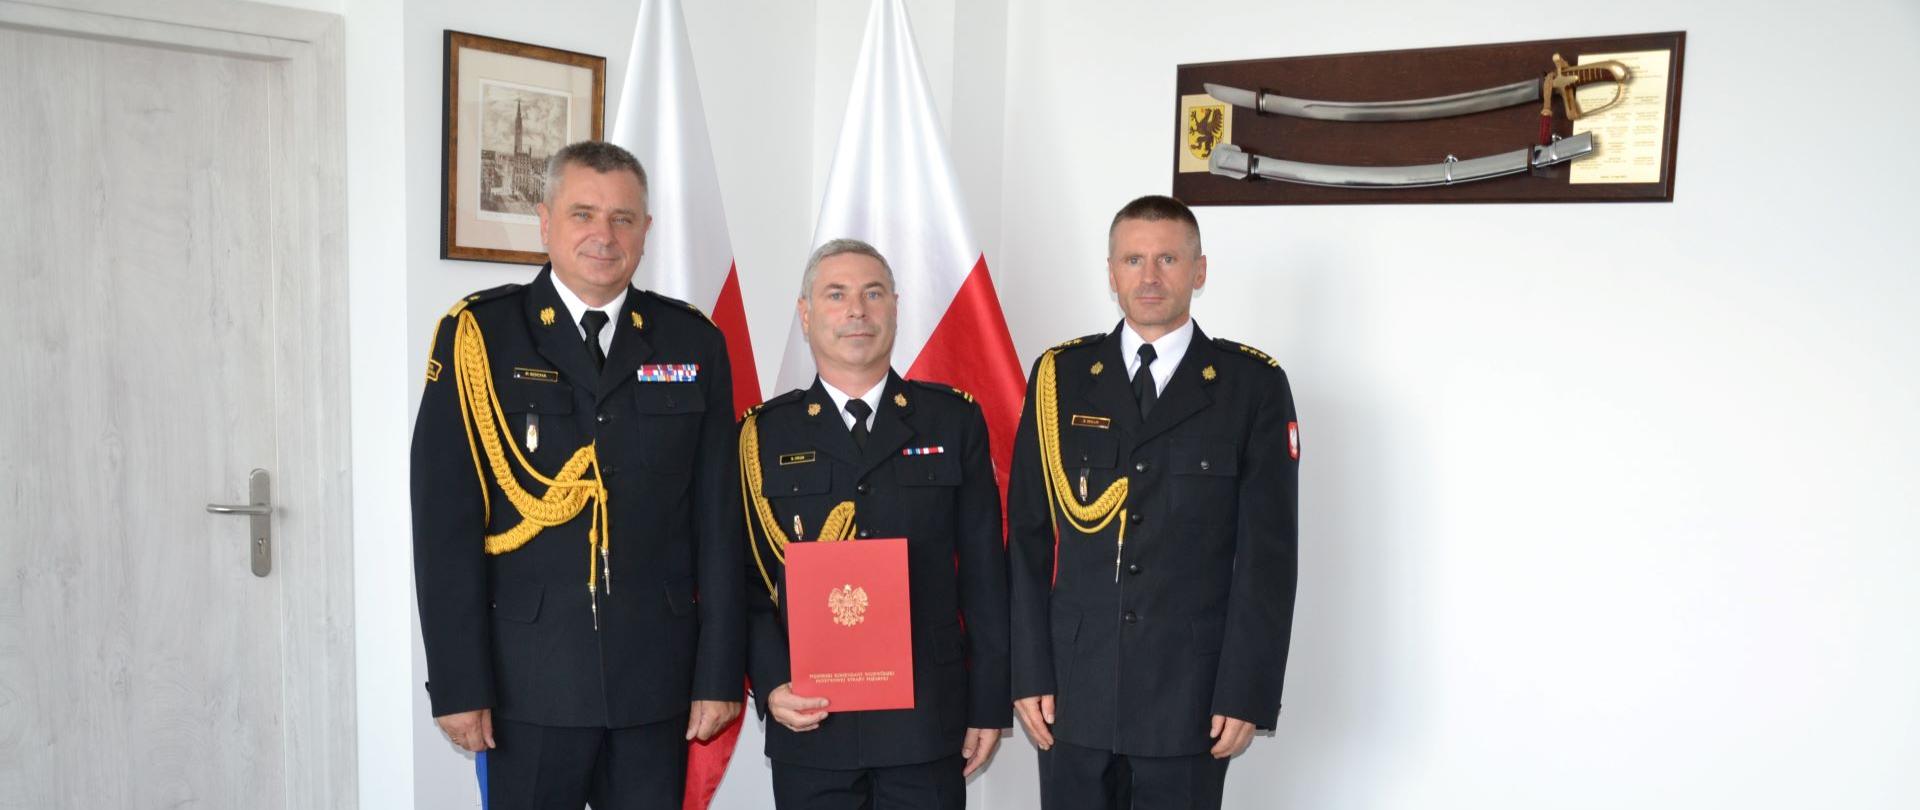 Pomorski komendant wojewódzki Państwowej Straży Pożarnej stoi wraz ze strażakami jeden z nich trzyma czerwoną teczkę za nimi stoją flagi Polski.